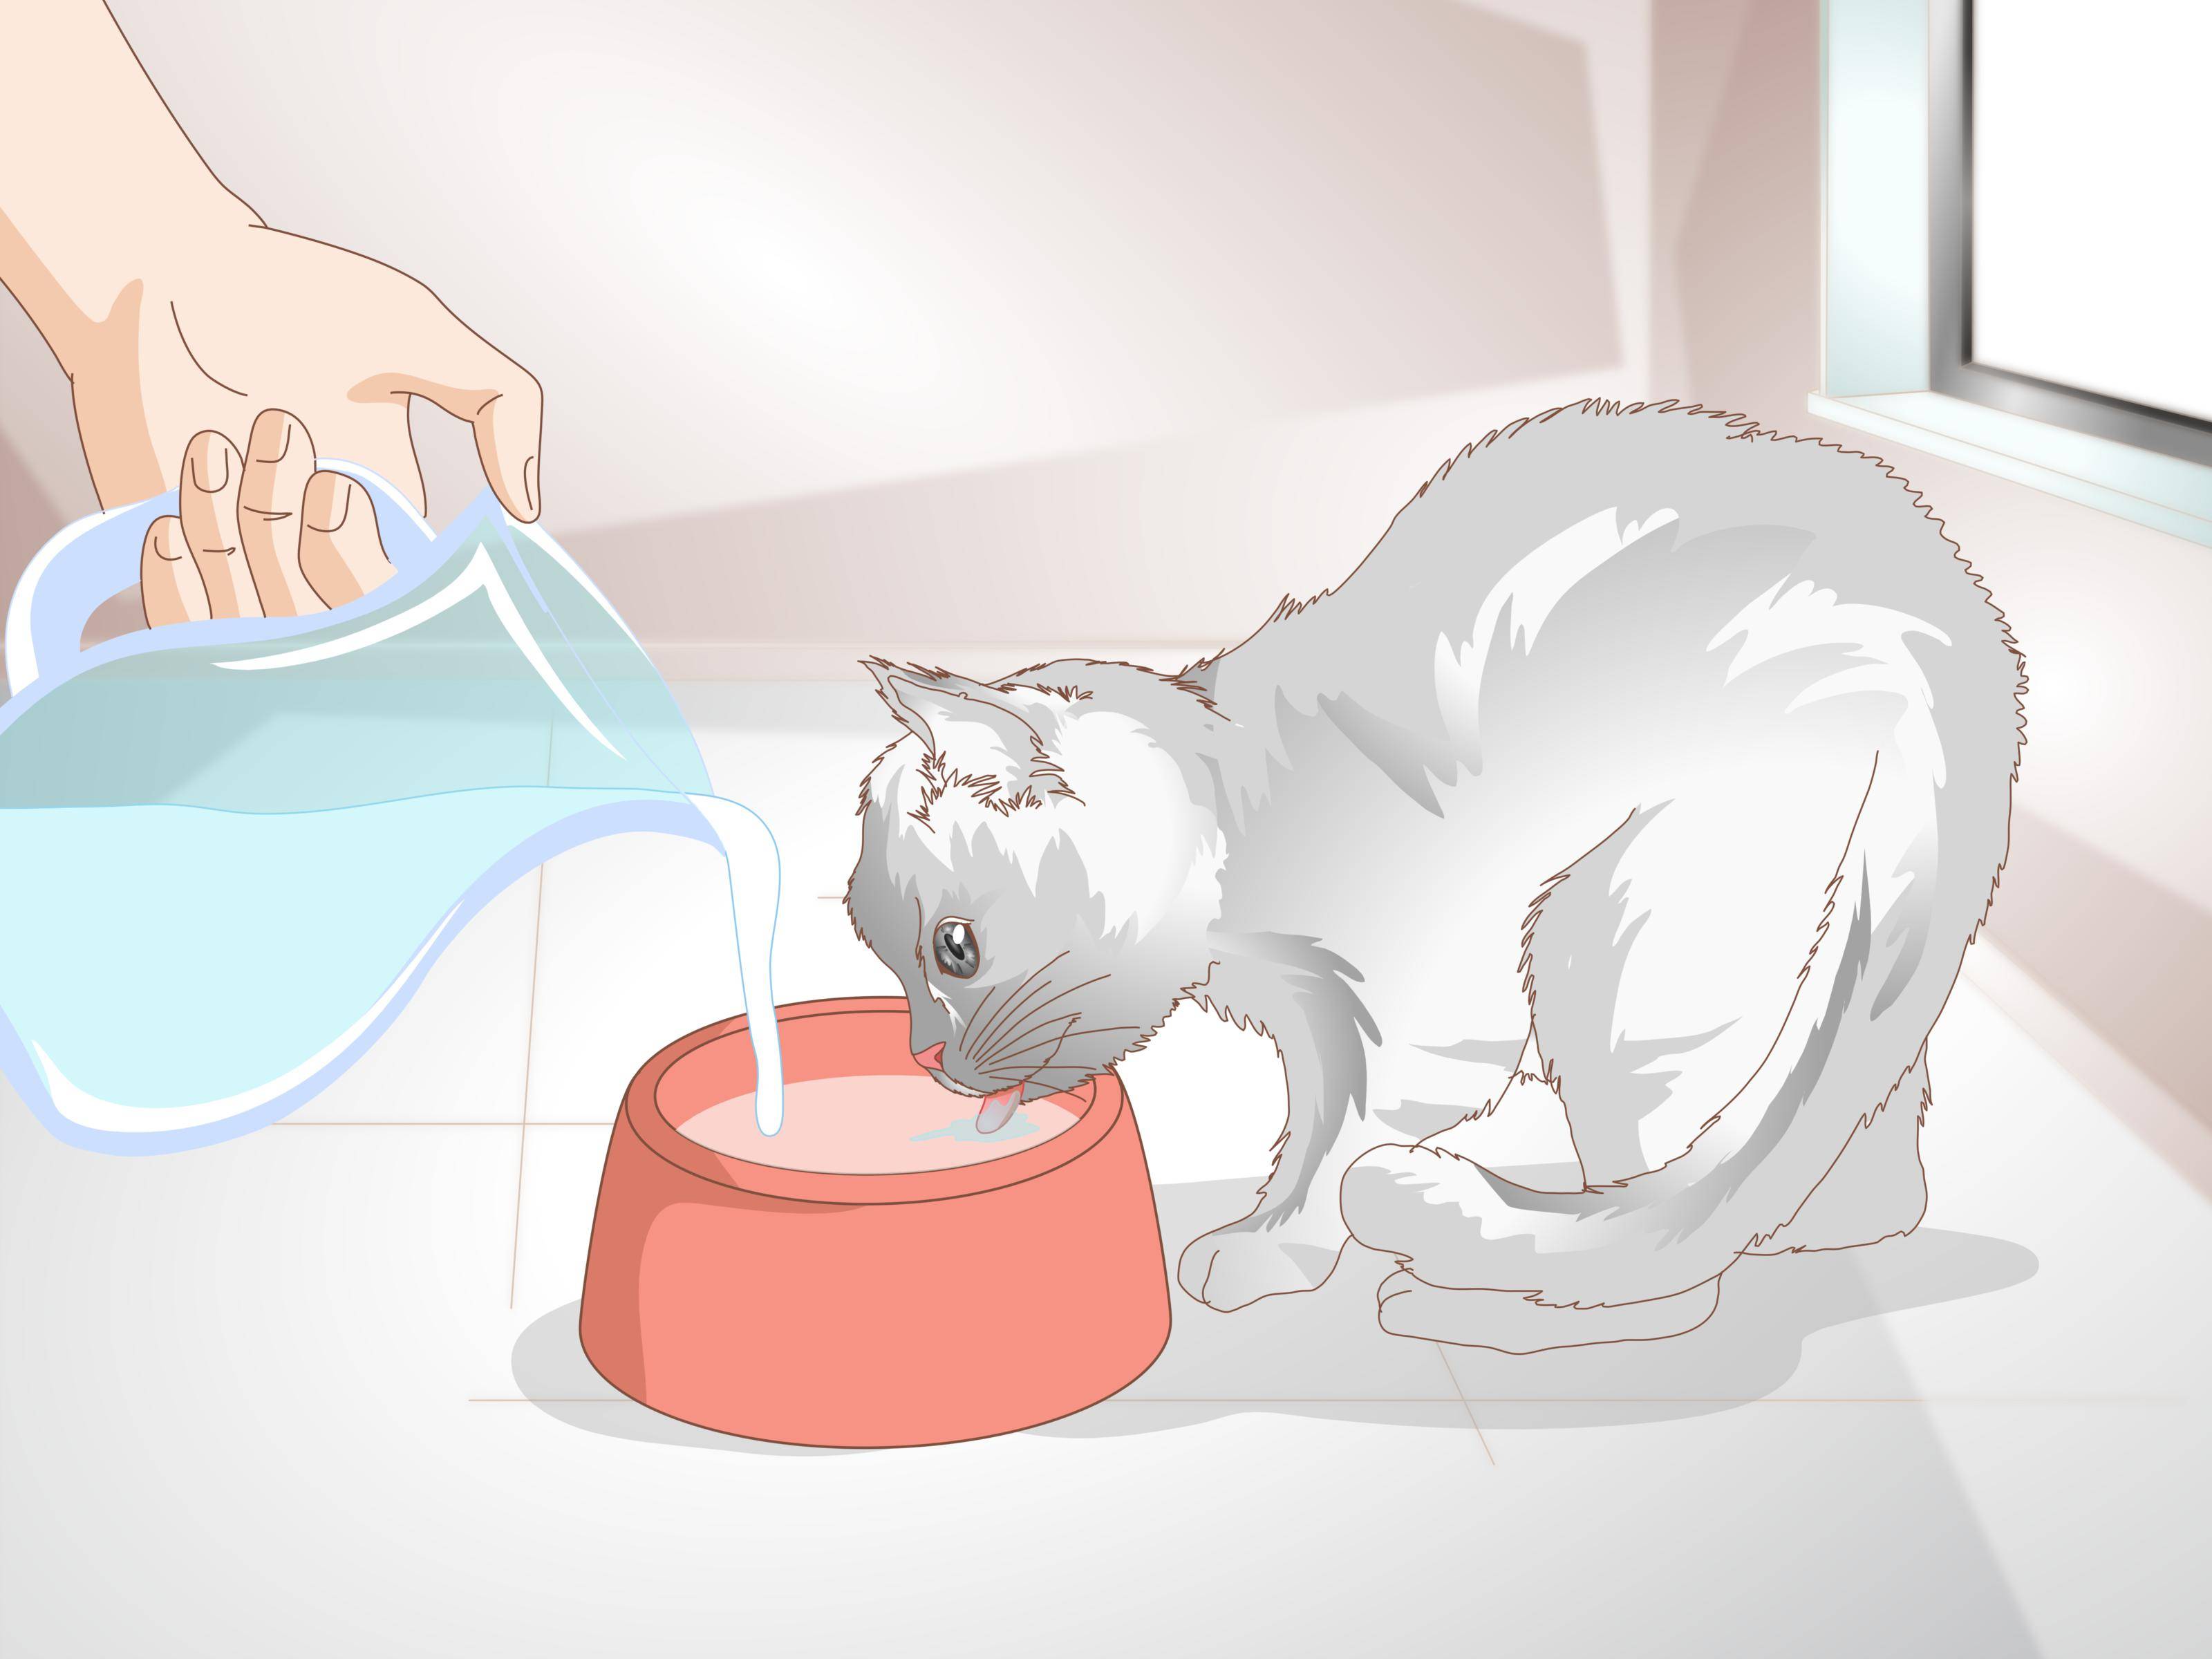 Как помочь кошке родить, если она не справляется самостоятельно